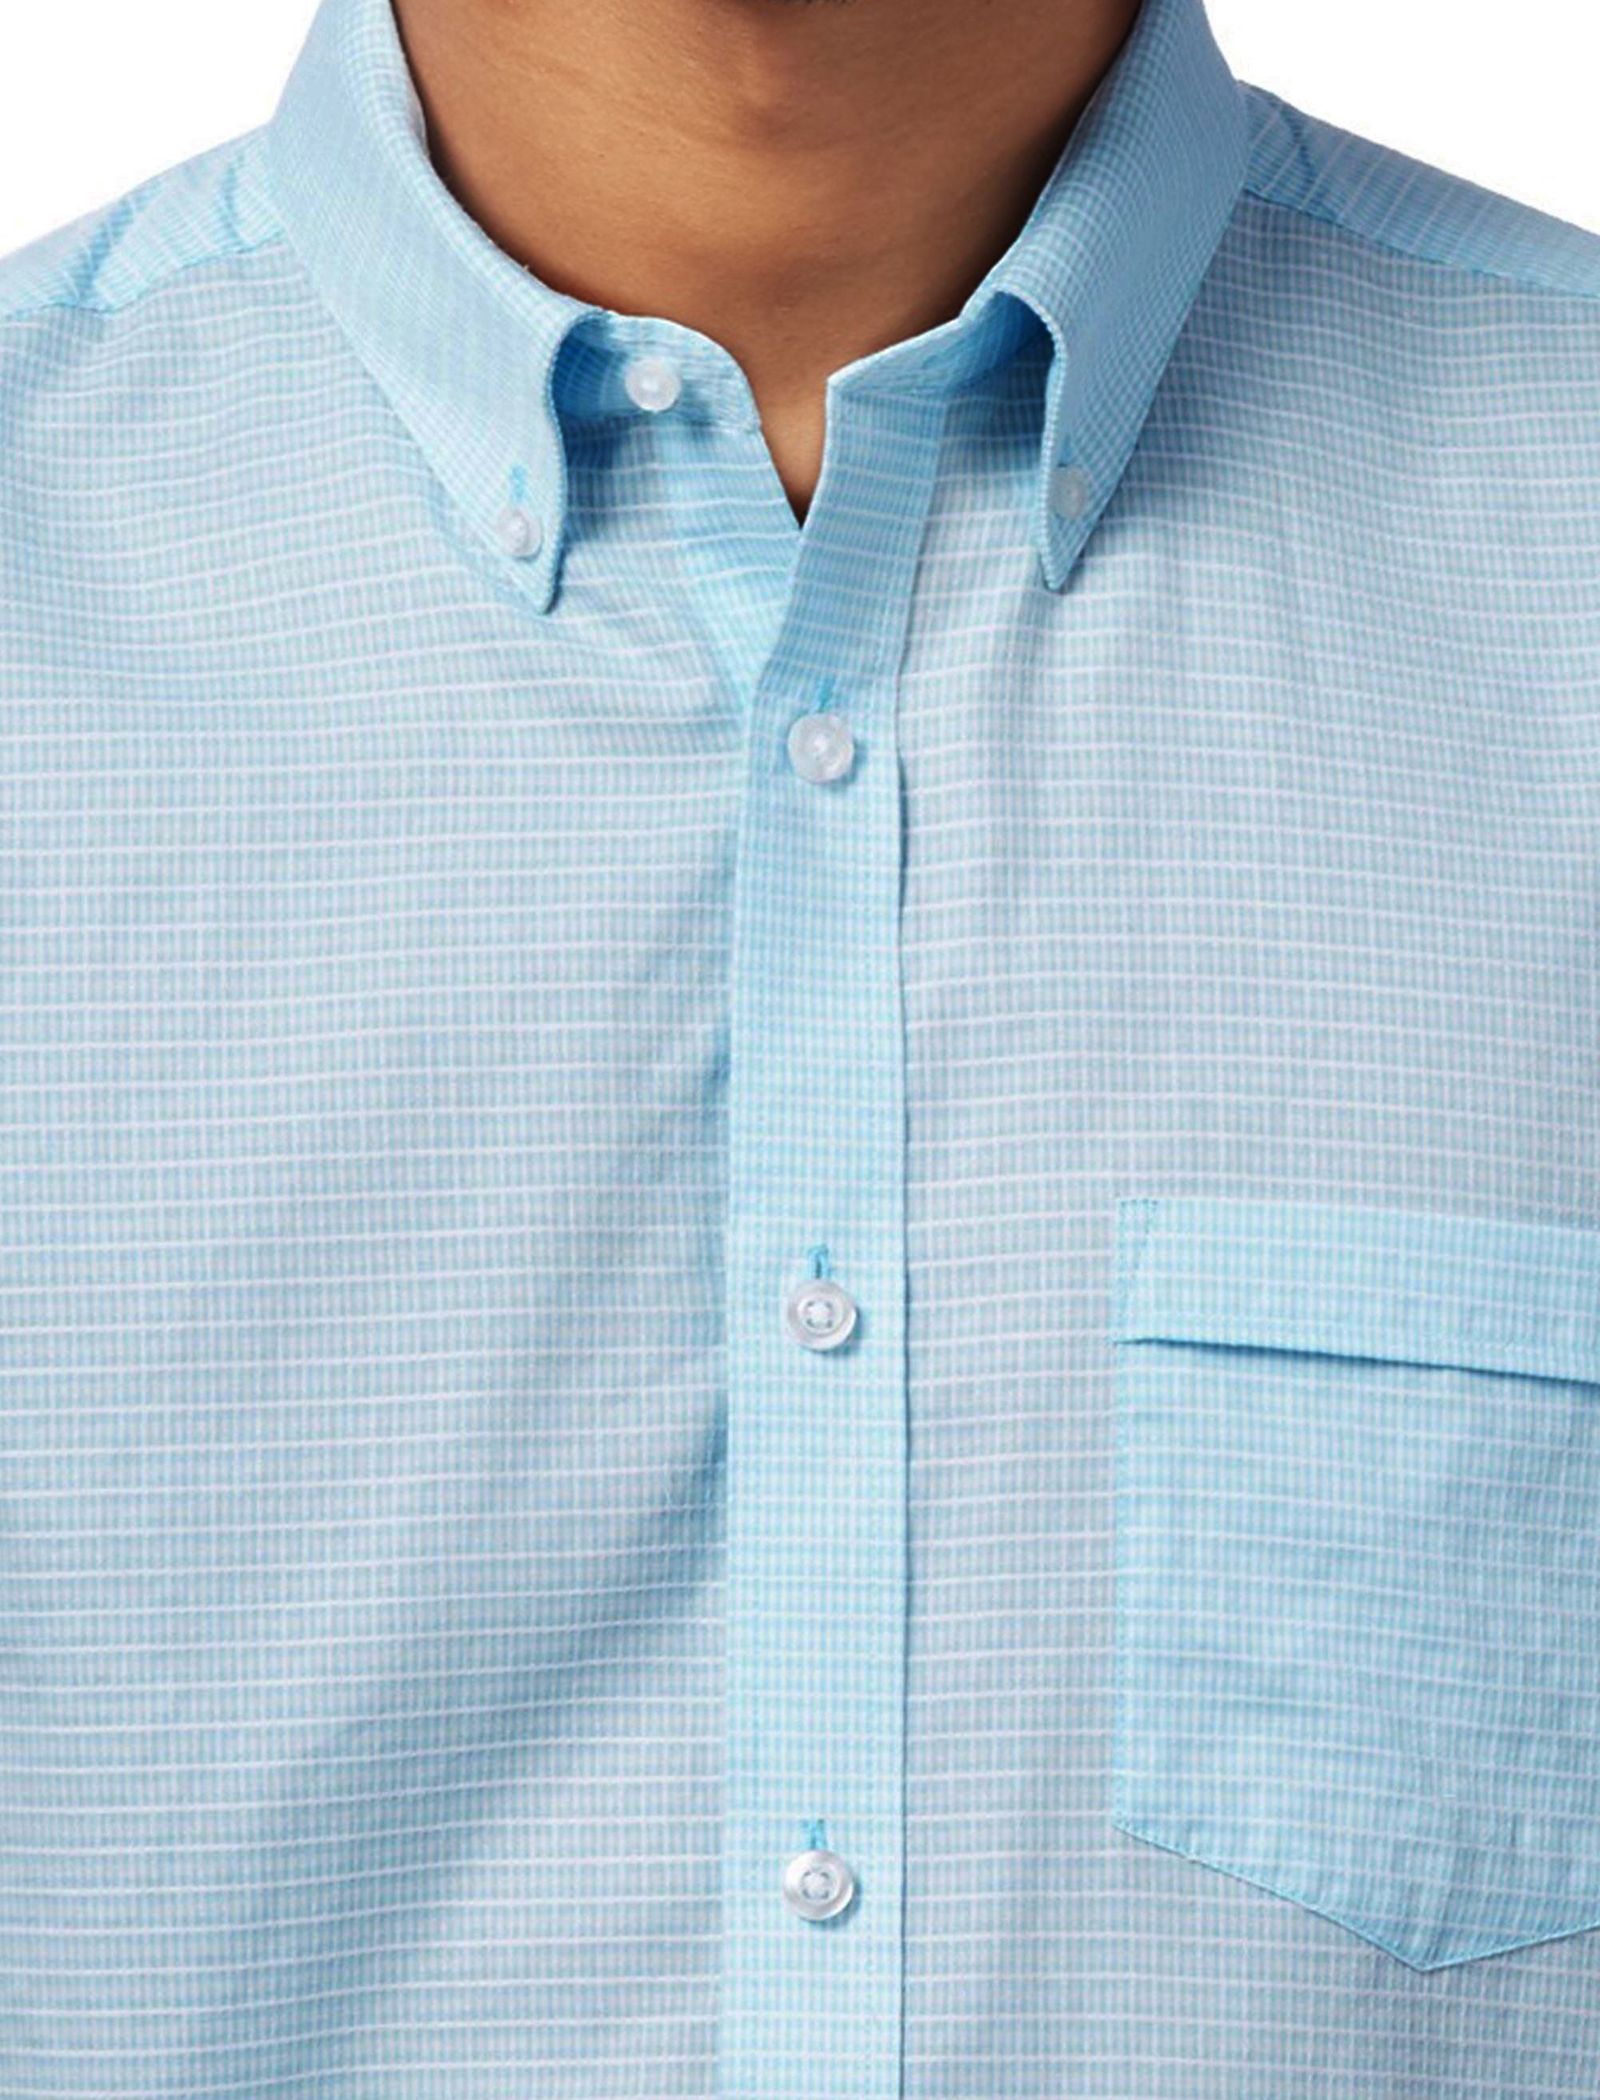 پیراهن نخی آستین کوتاه مردانه - کالکشن - آبي روشن - 4